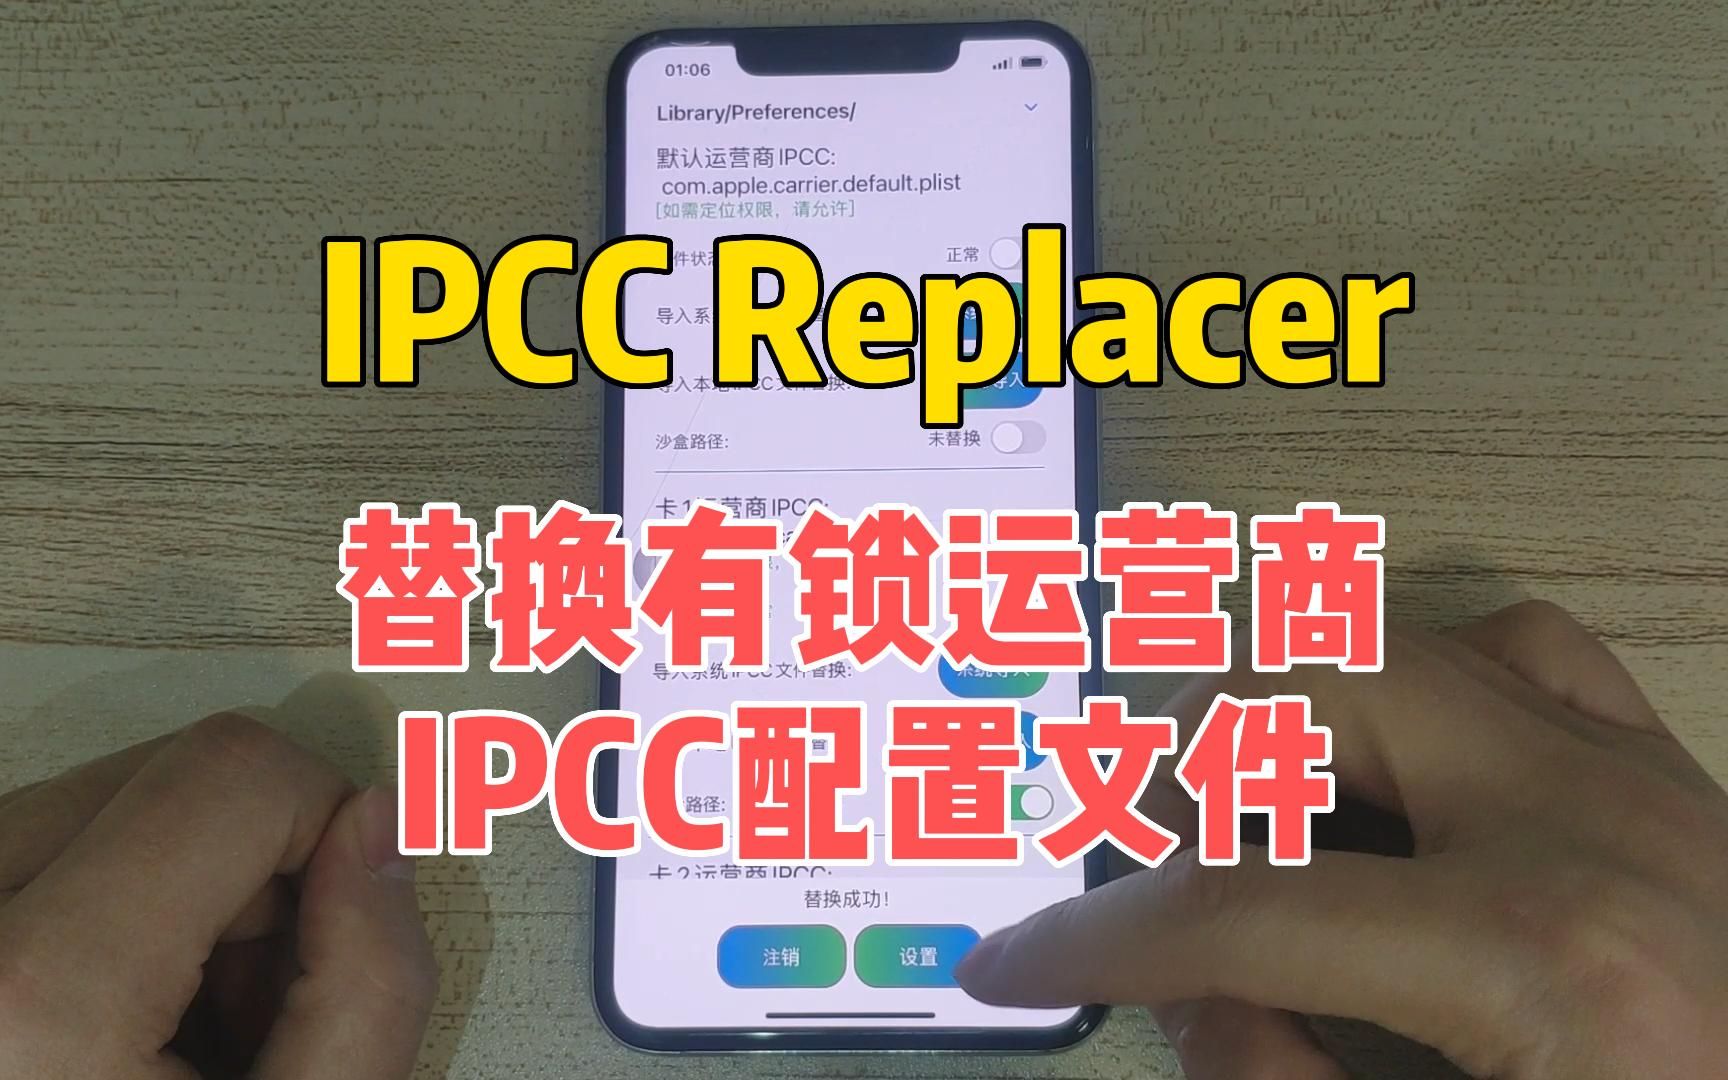 使用IPCC Replacer替换有锁运营商系统IPCC配置文件，获取4G、5G网络，重启生效